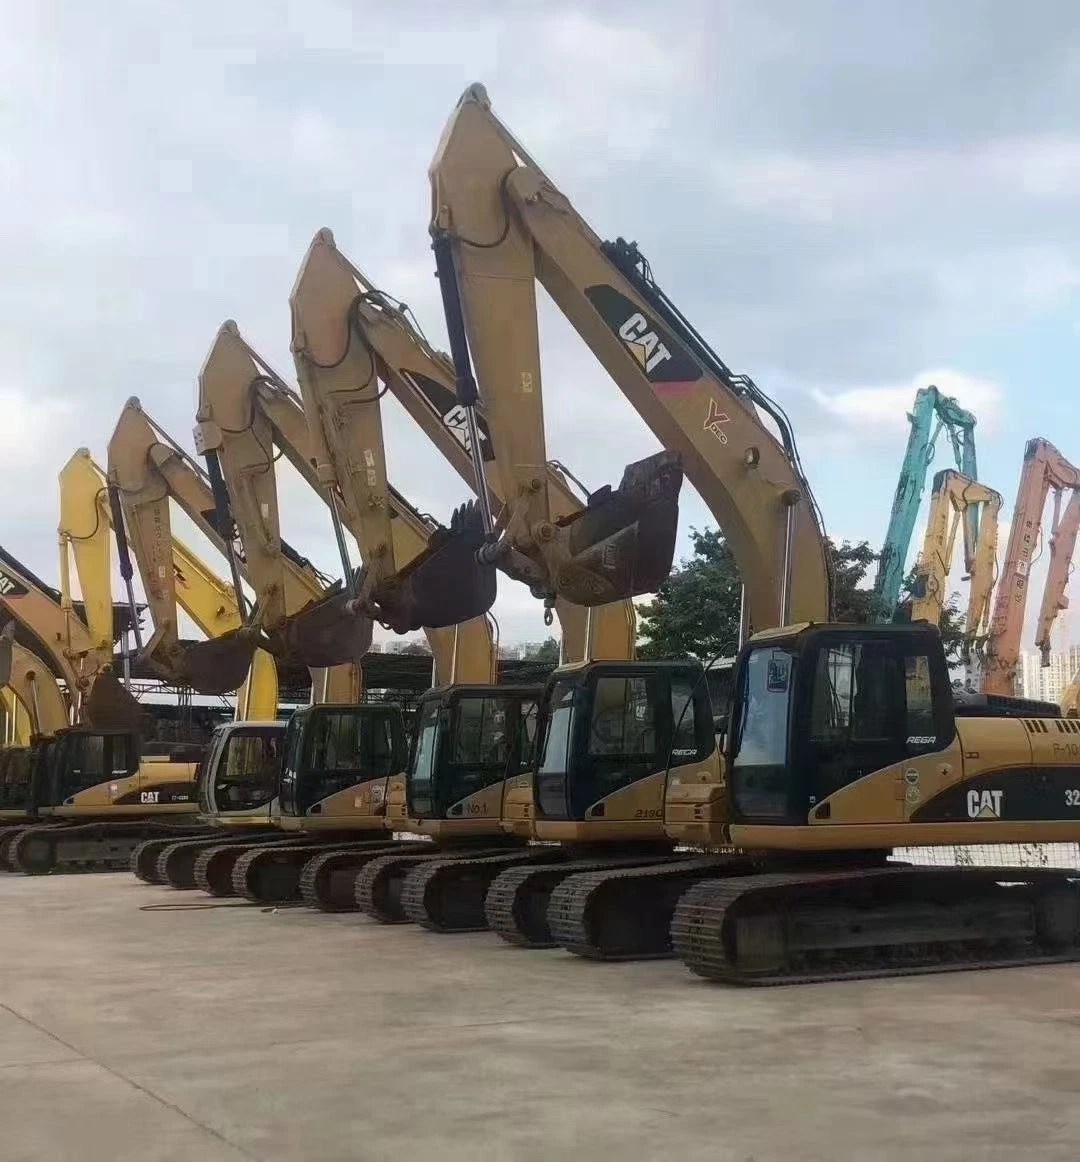 45 toneladas de máquina de construcción de excavadoras de segunda mano en movimiento de tierra Equipo Caterpillar Cat 345D Cat 345dl Cat 345D excavadora usada Excavadora